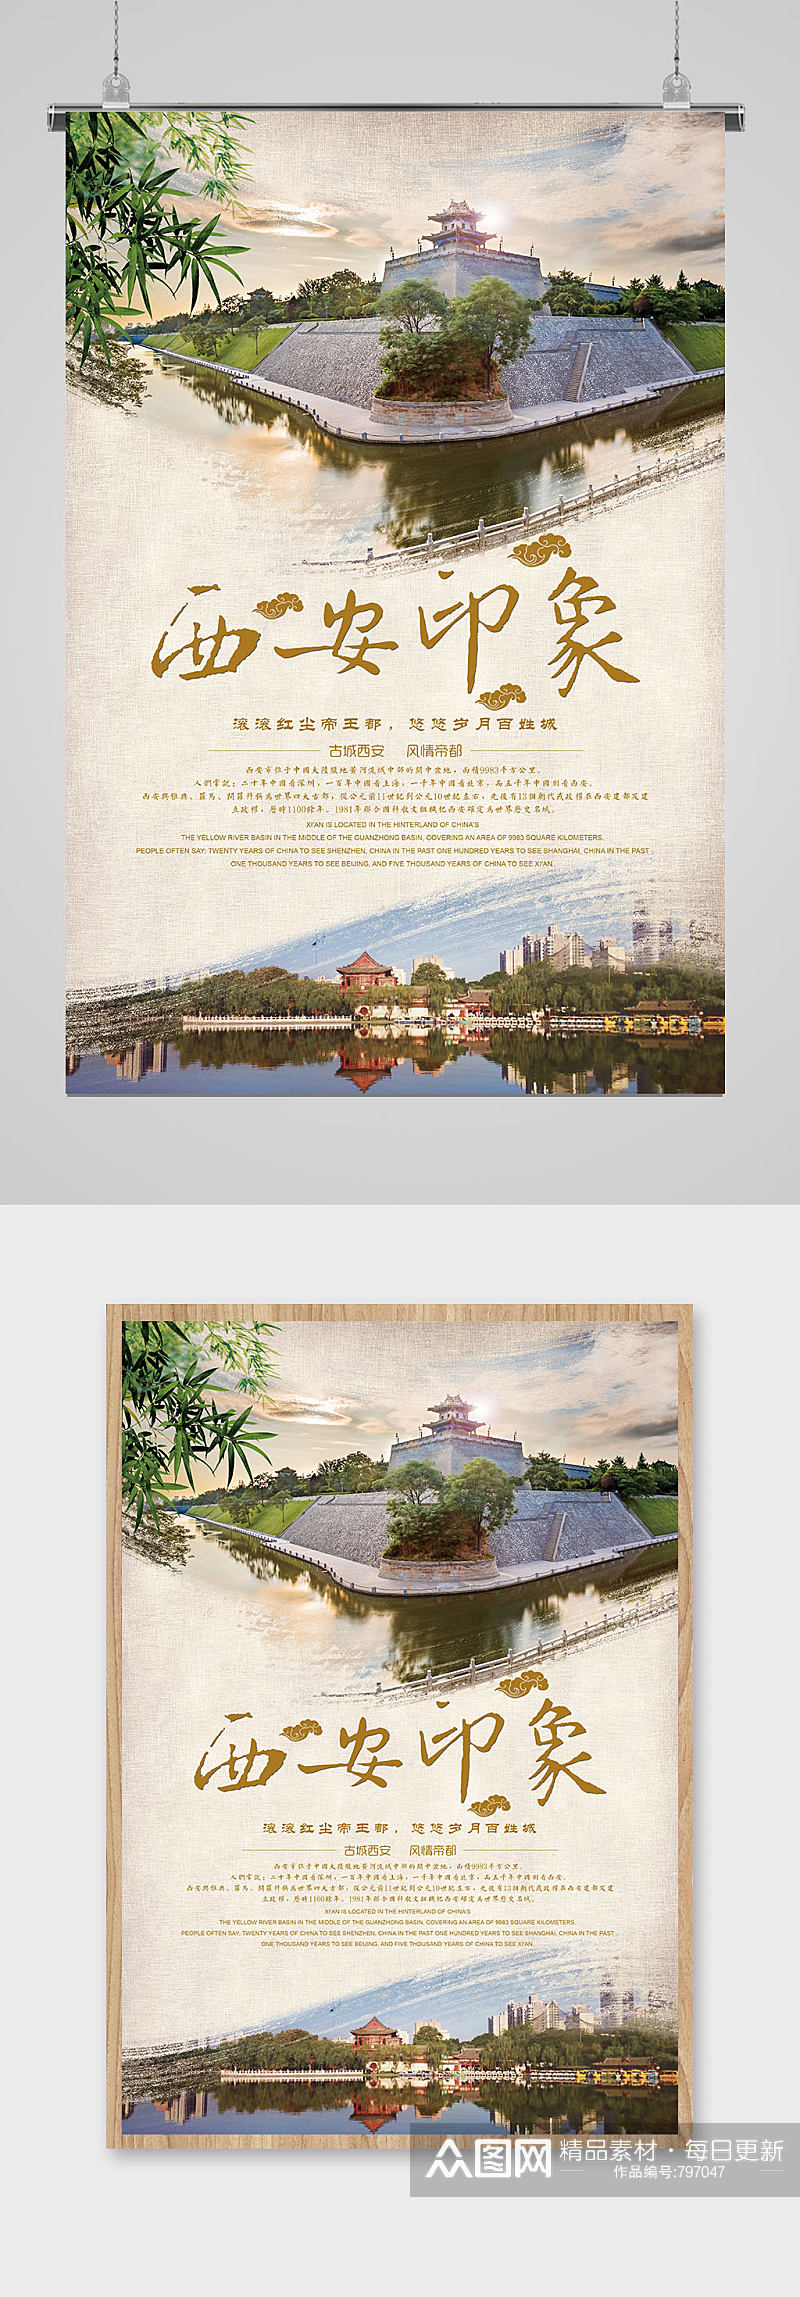 创意中国风西安印象旅游海报素材